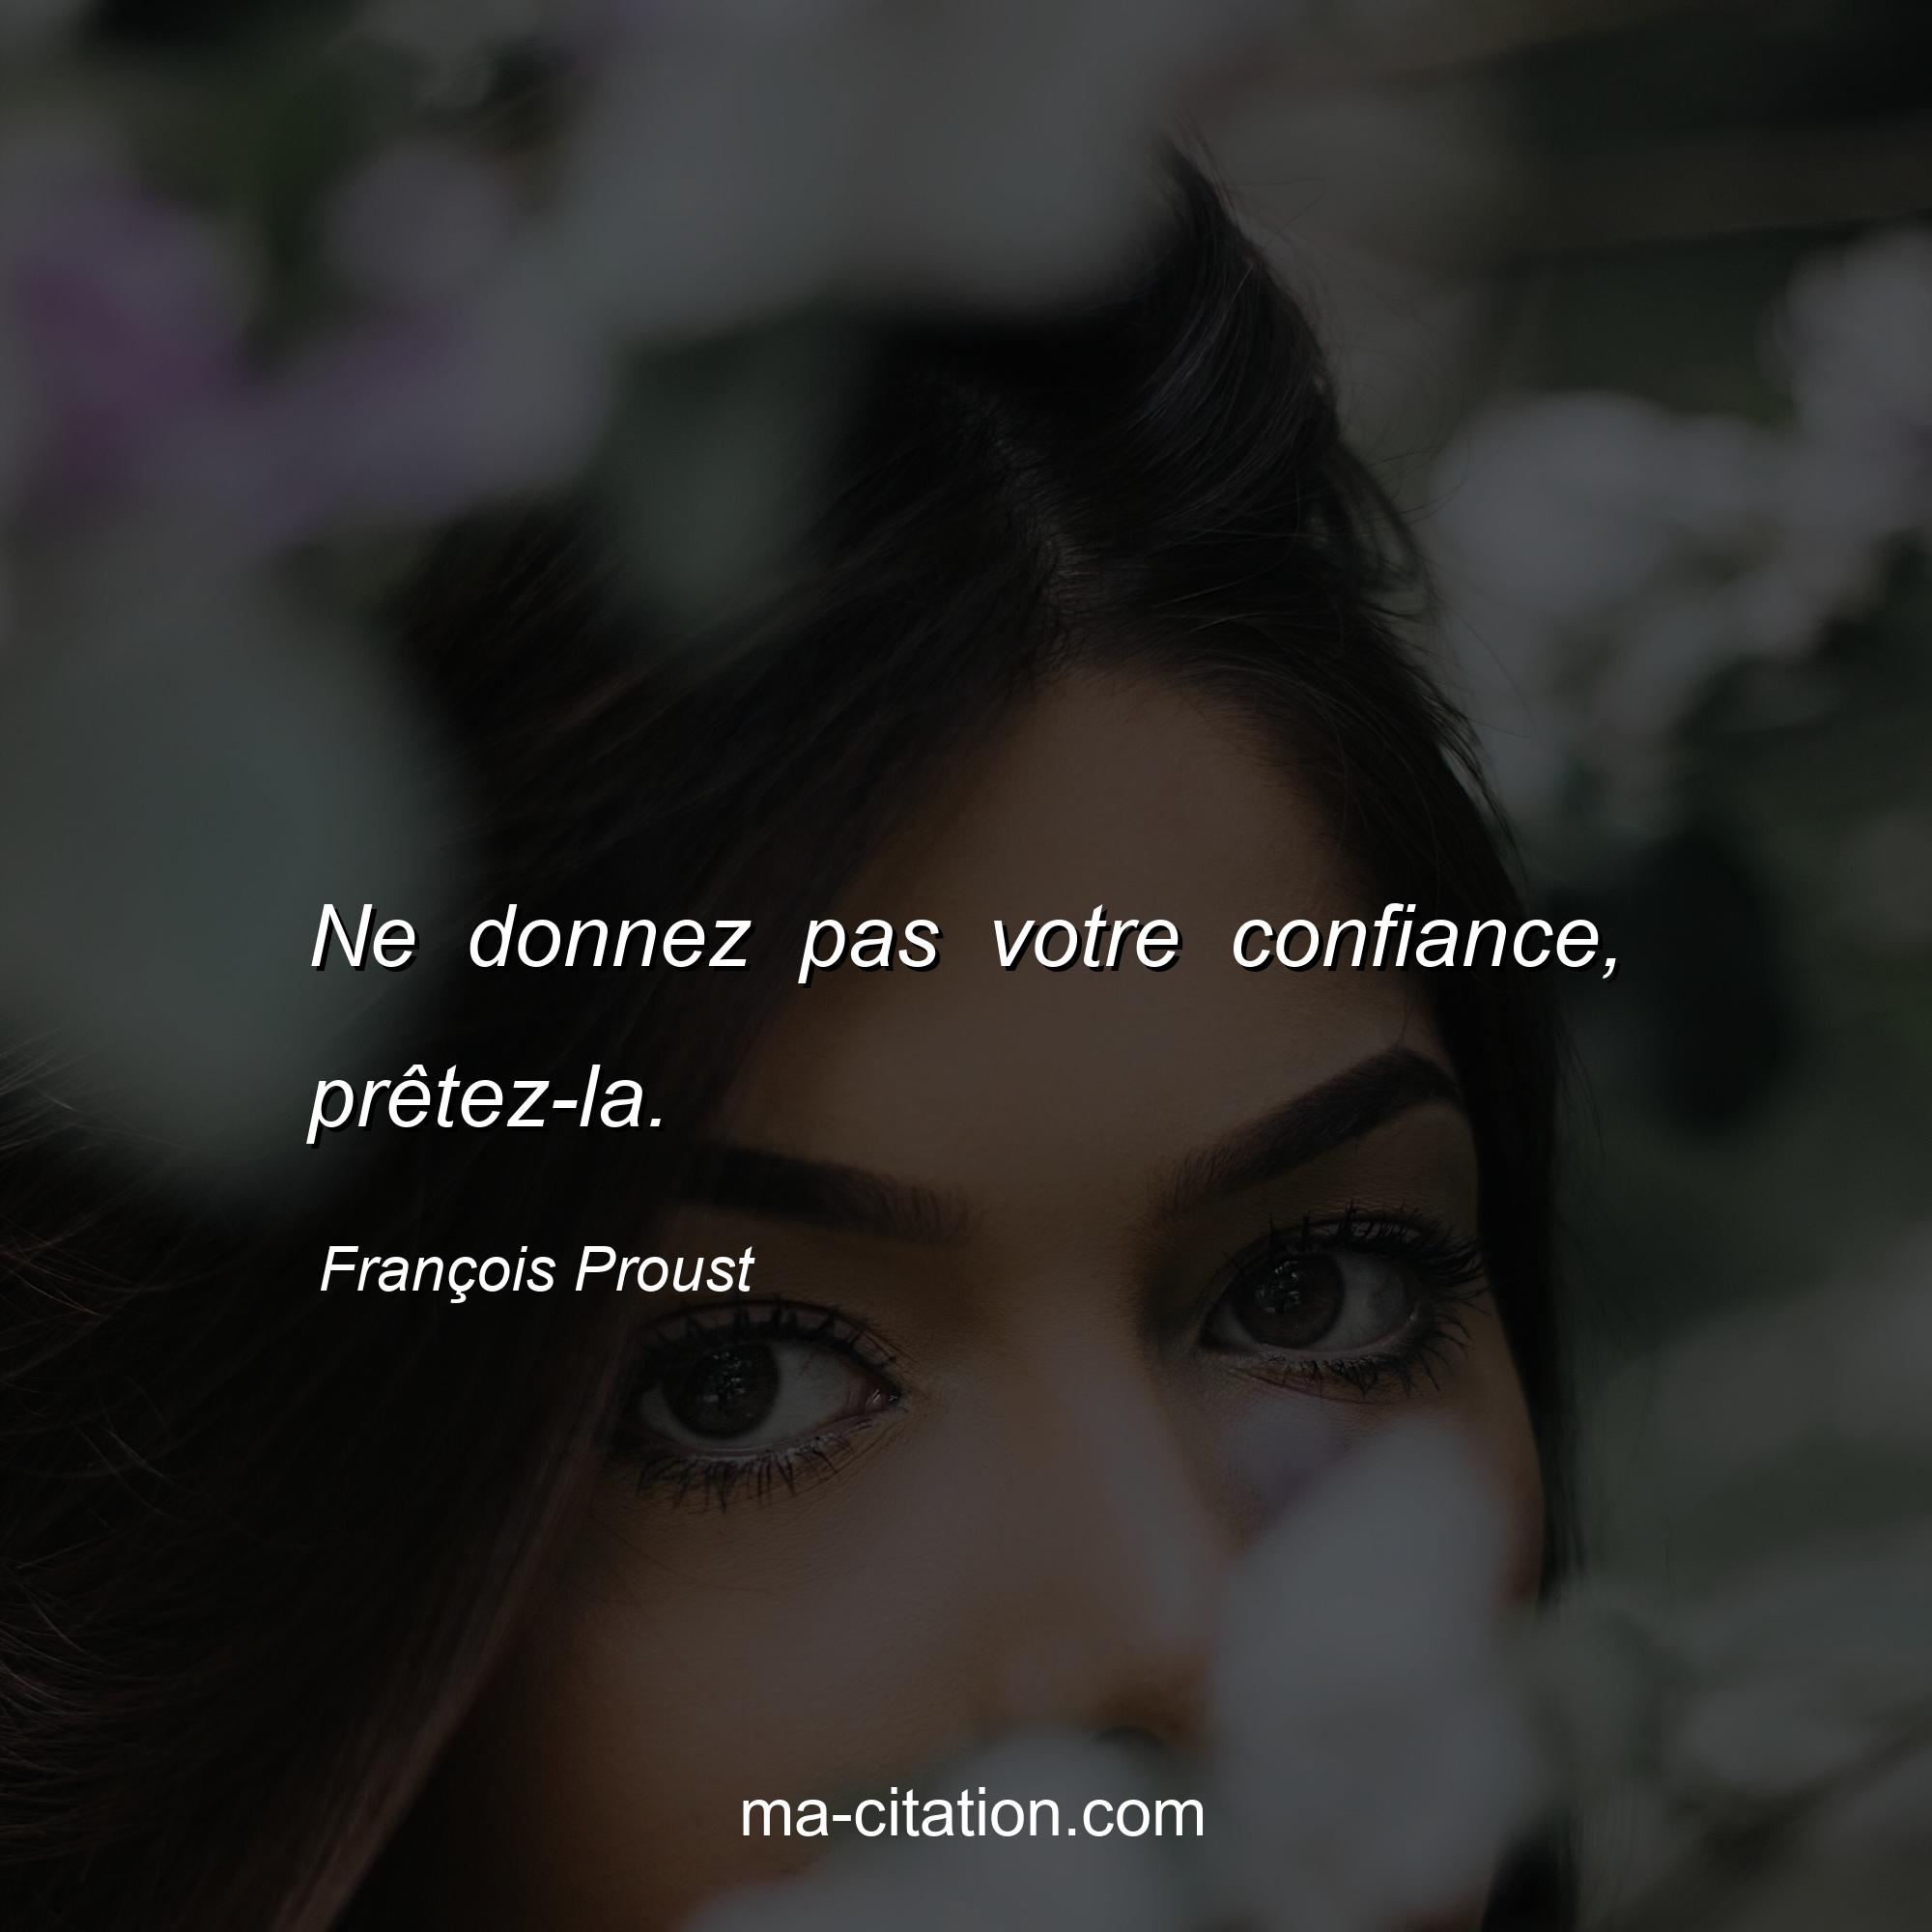 François Proust : Ne donnez pas votre confiance, prêtez-la.